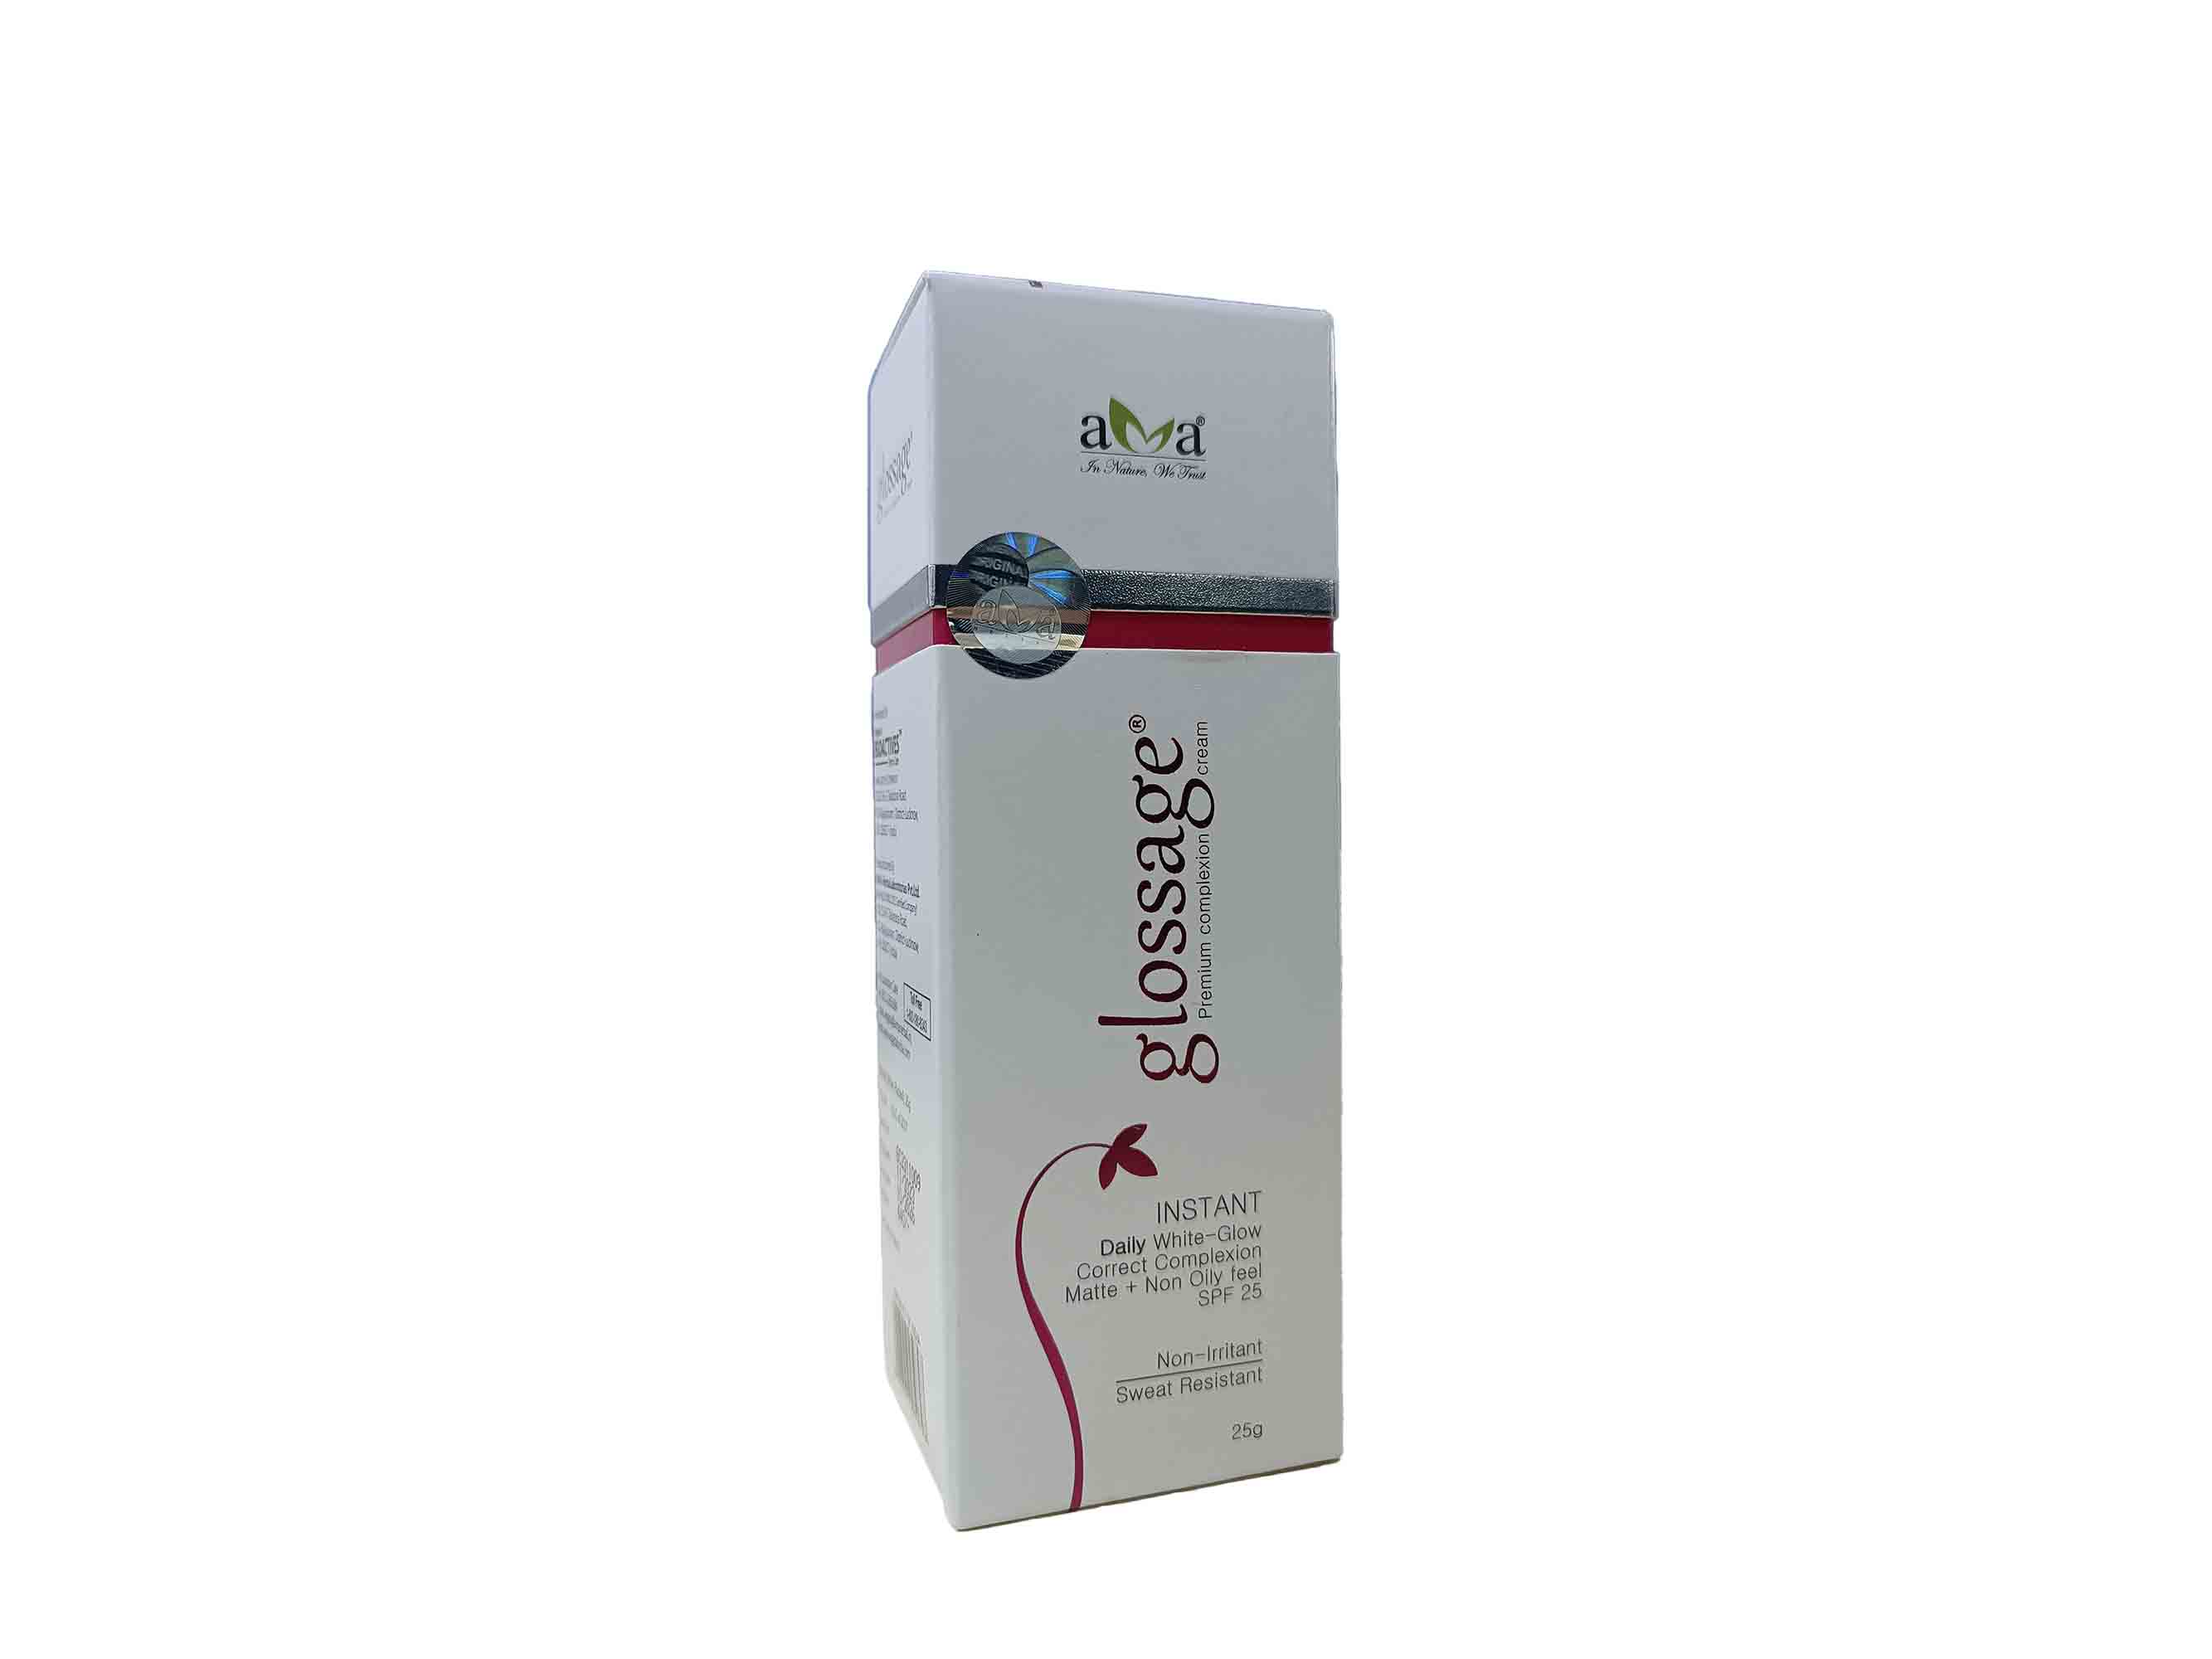 Vegetal Glossage Premium Complexion Cream